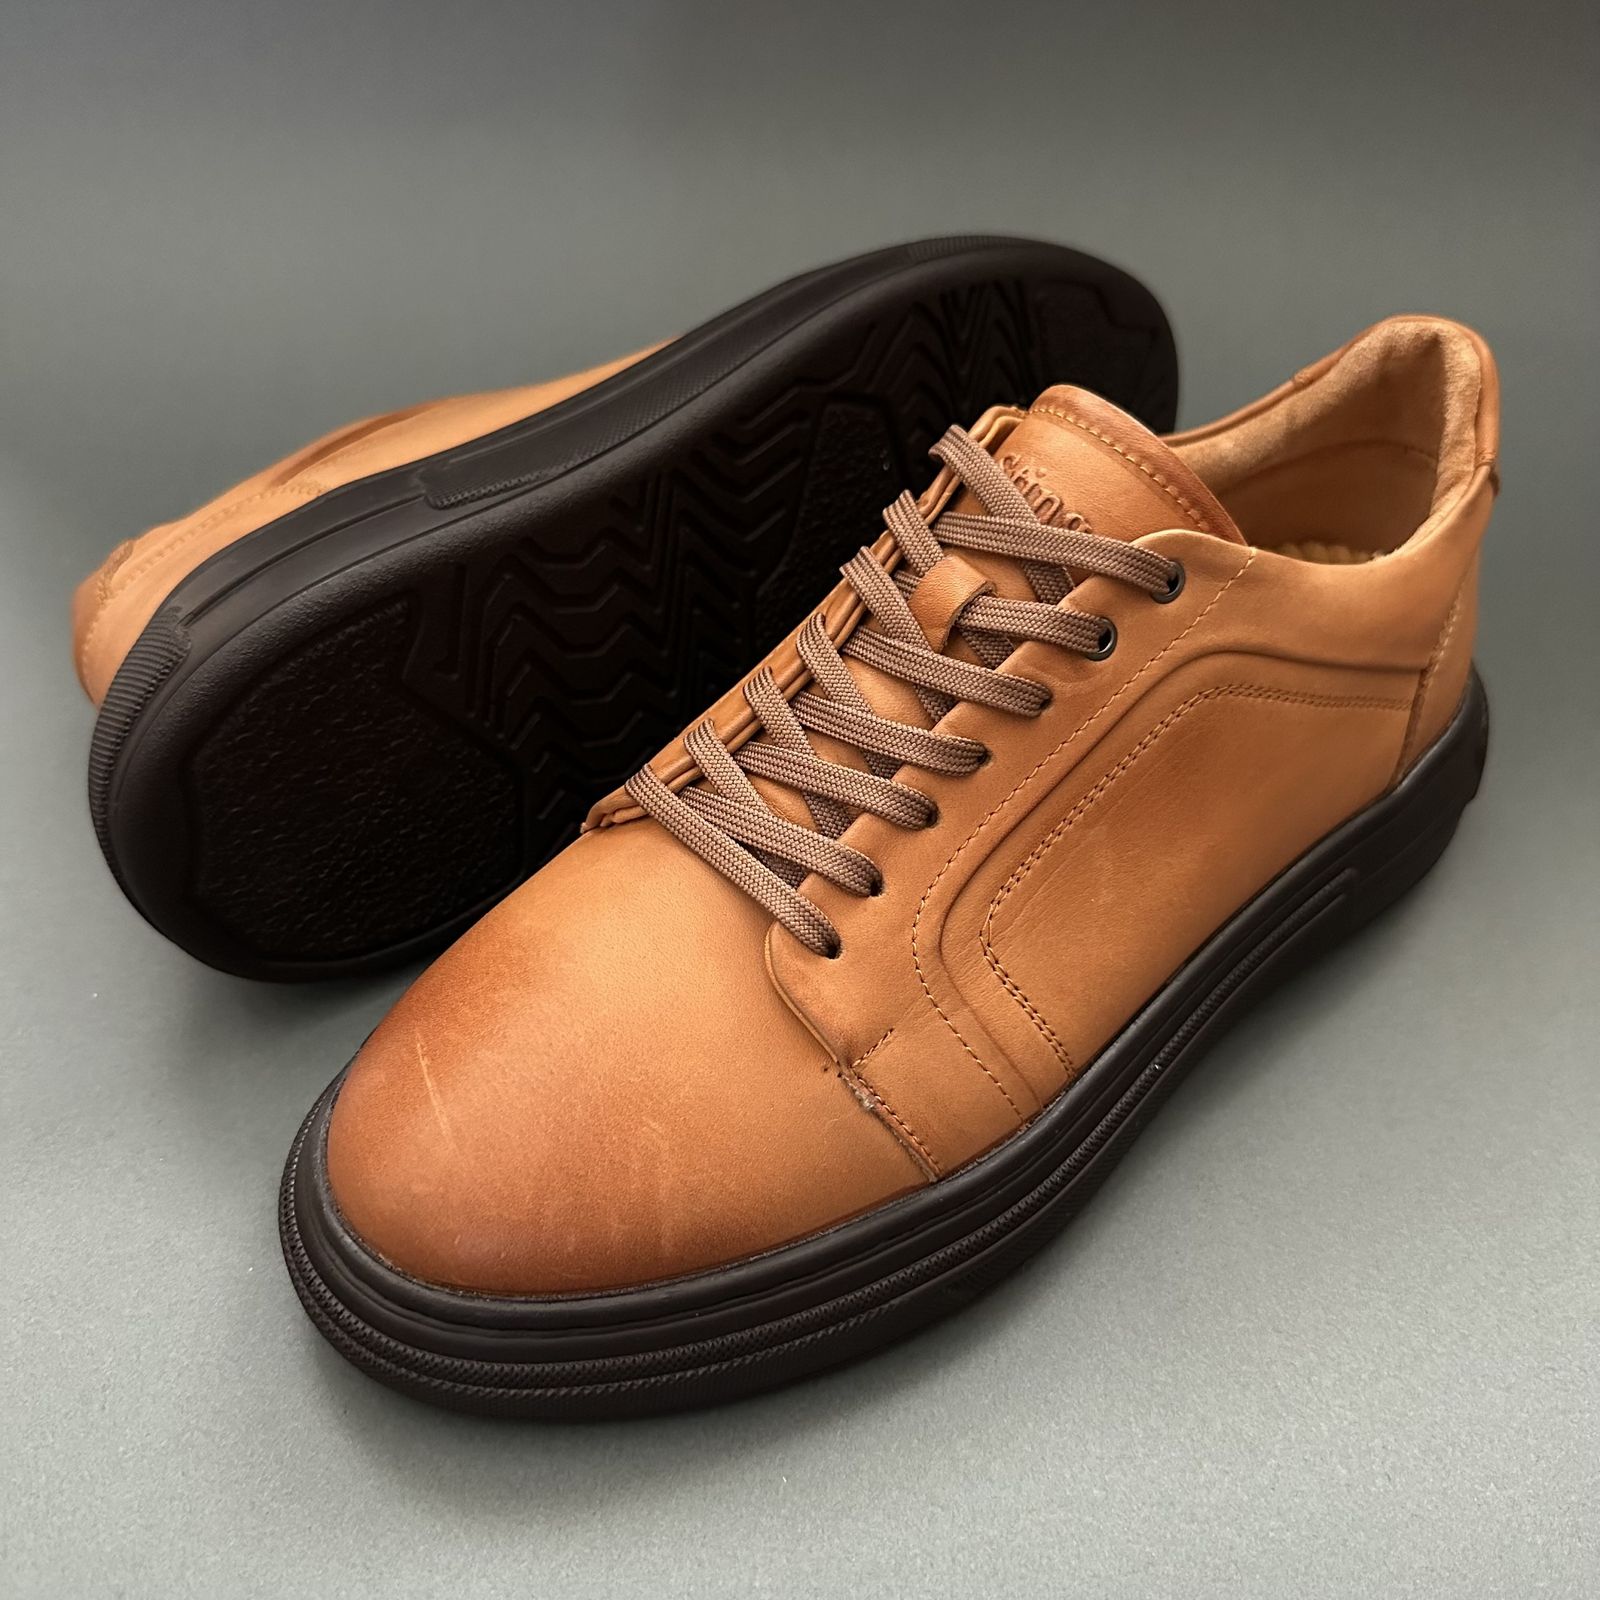 کفش روزمره مردانه استینگ مدل S211 -  - 3